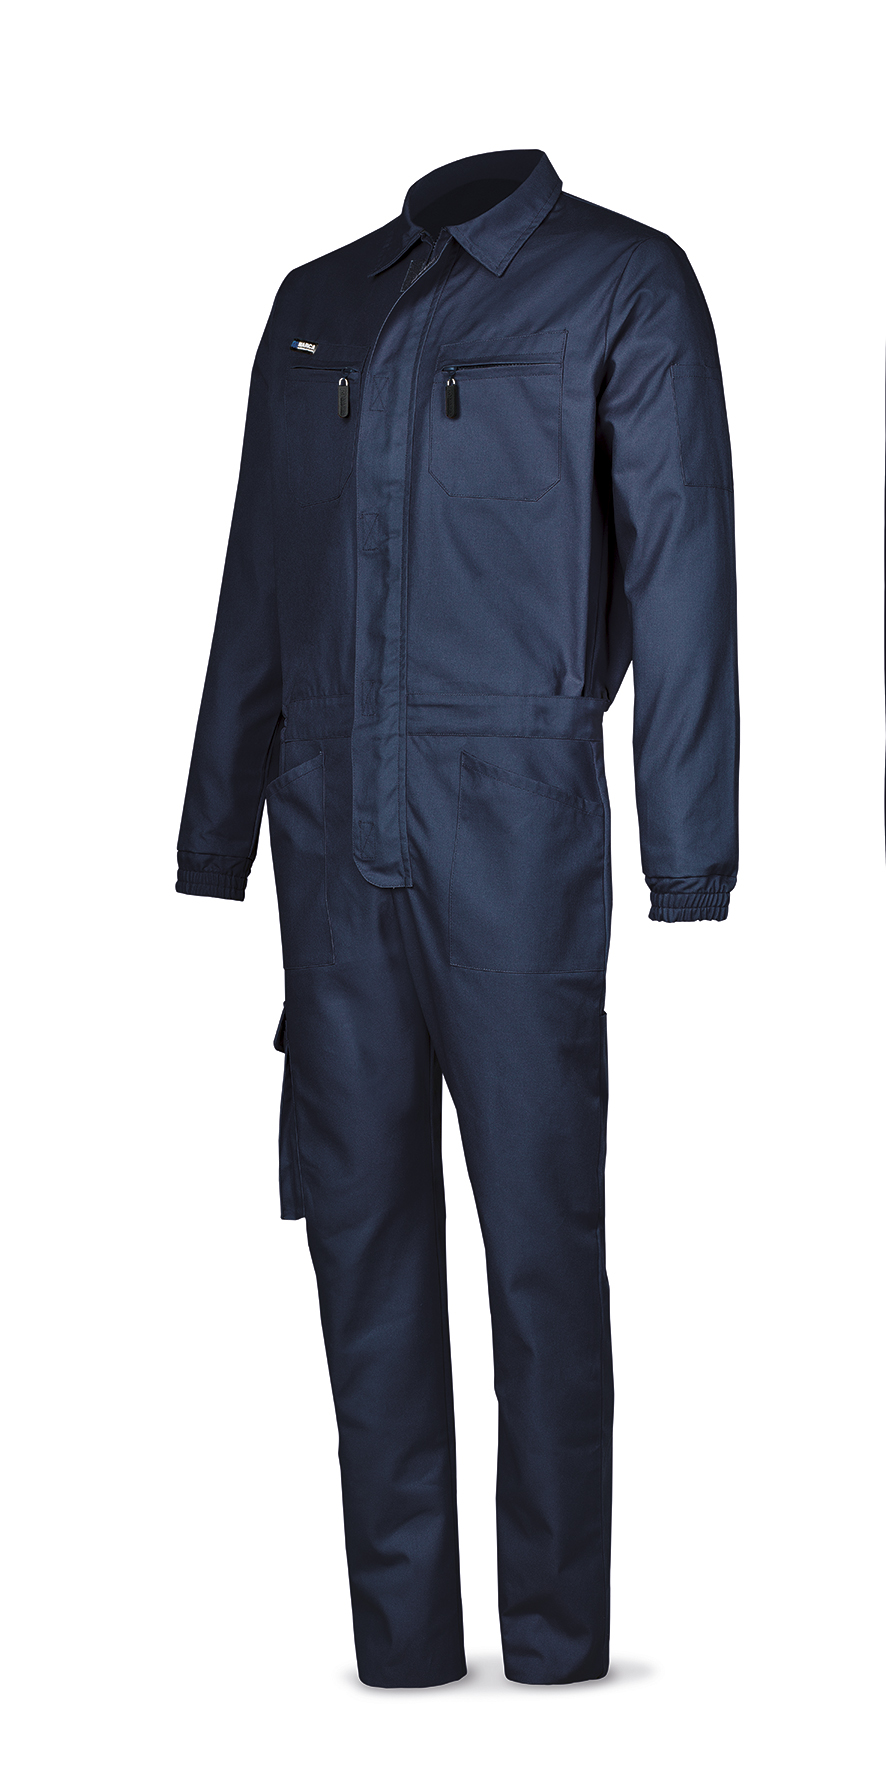 488-BA Top Vestuario Laboral Serie Top Buzo azul marino algodón de 245 g.